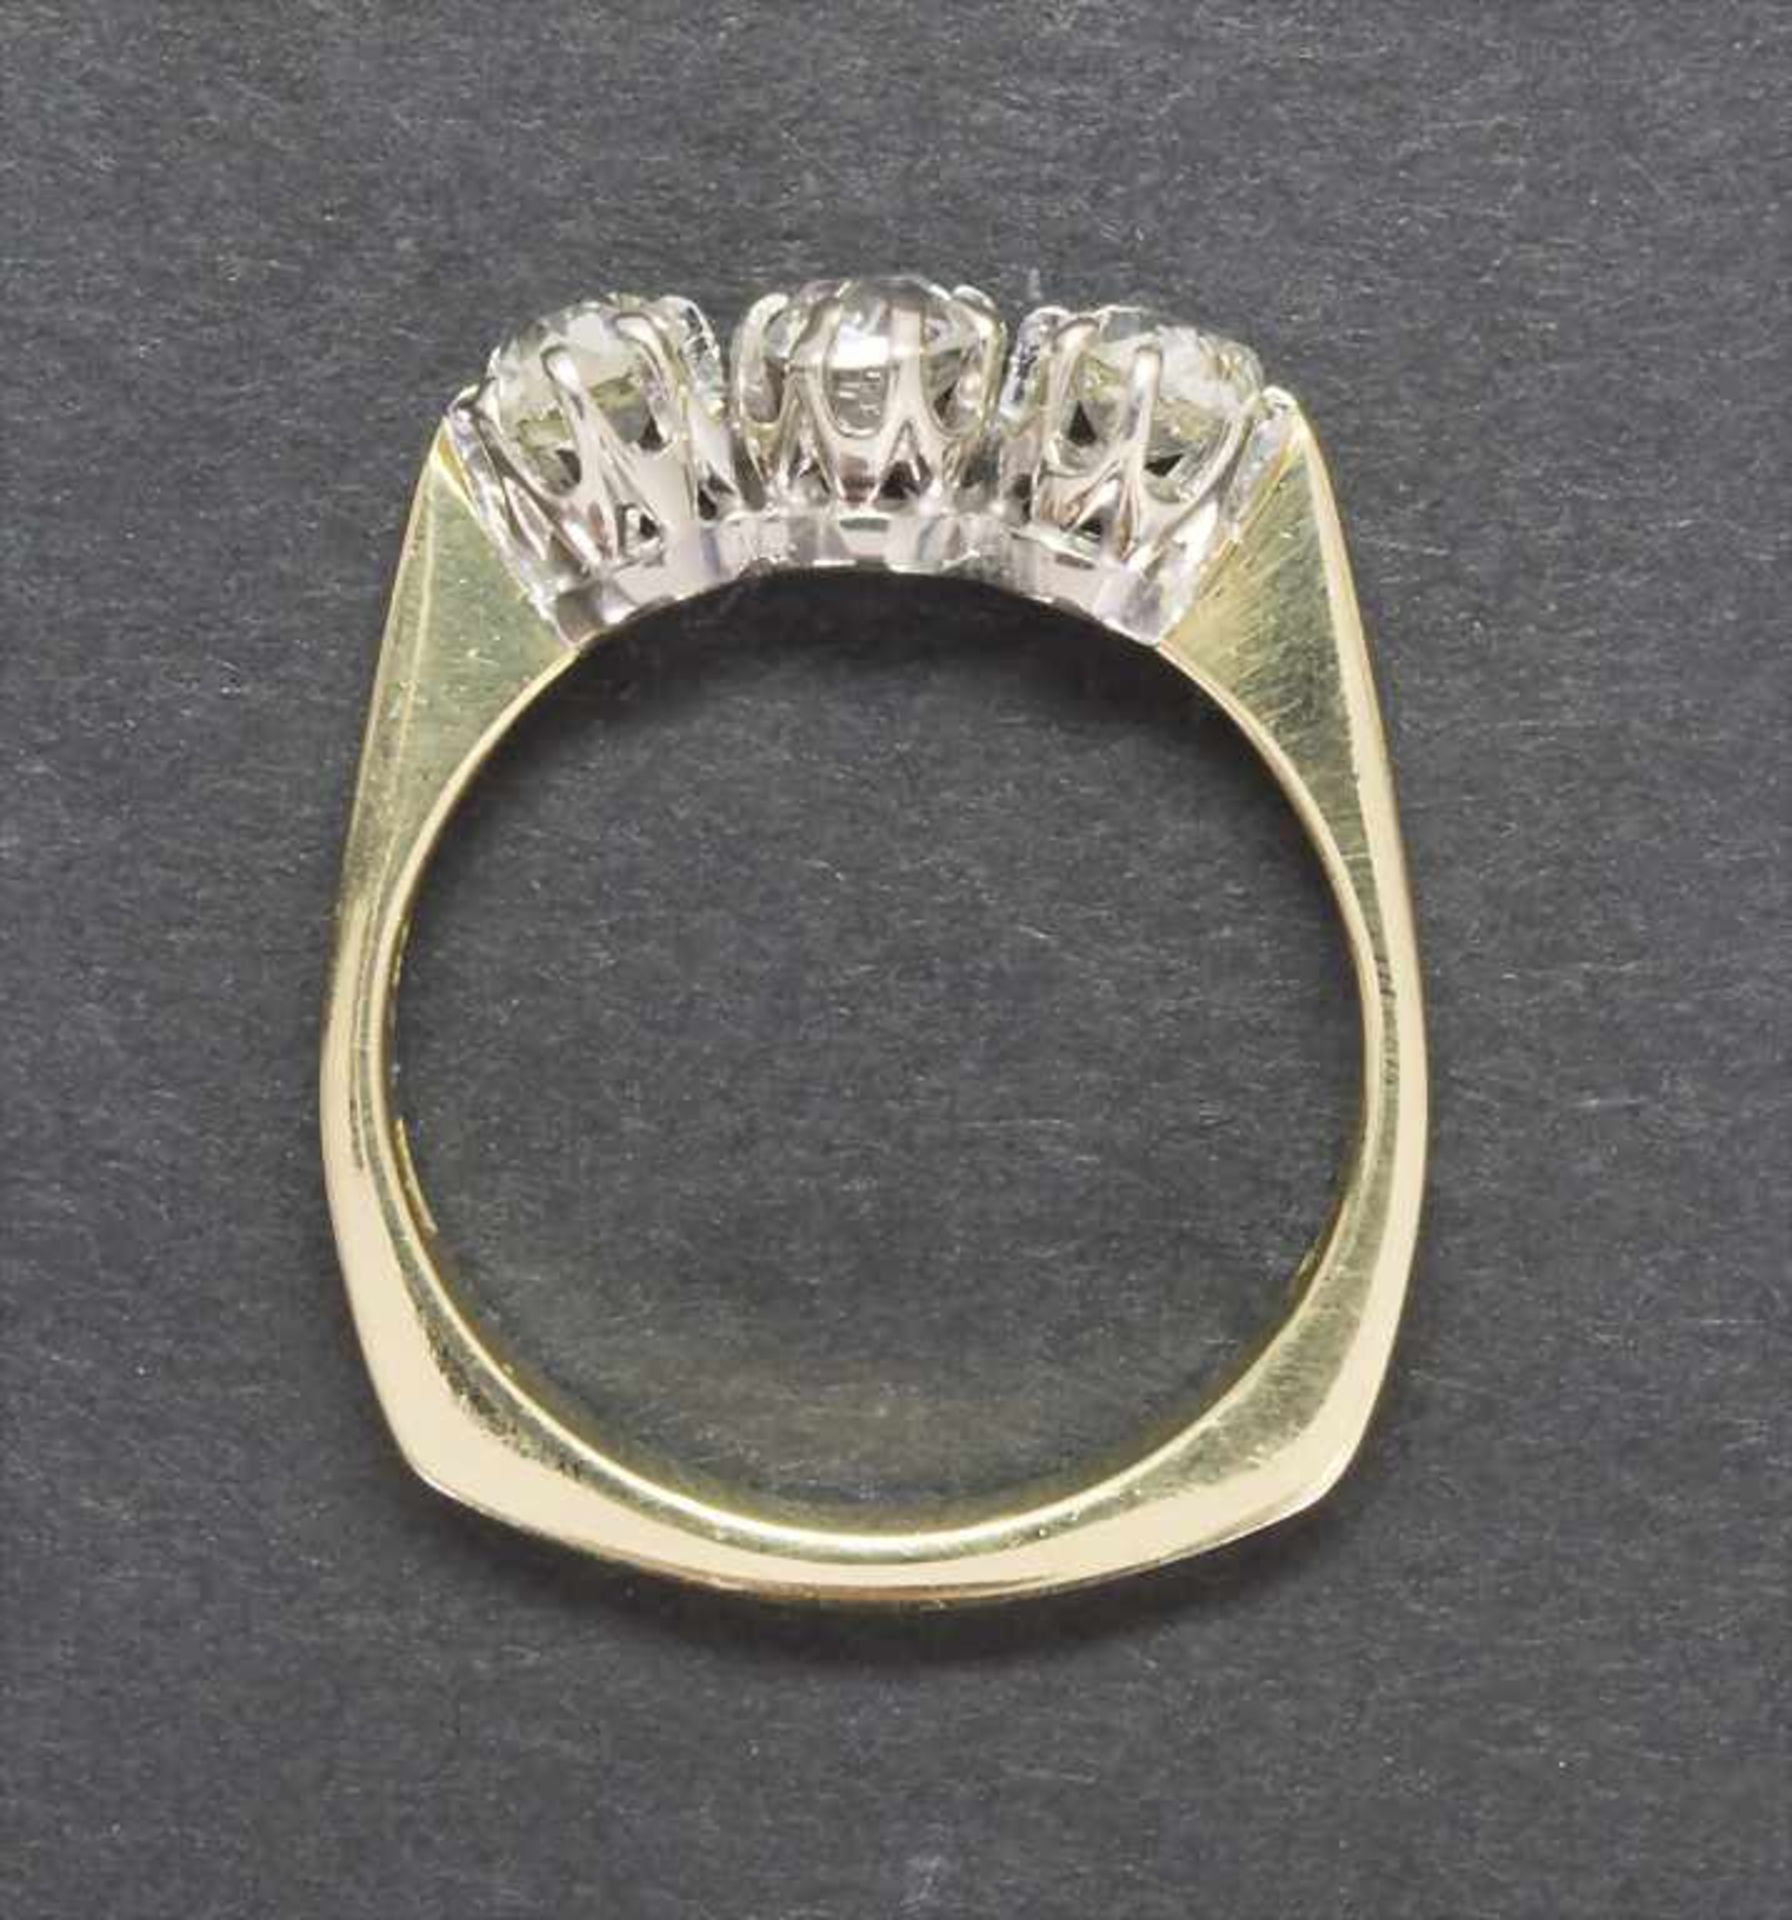 Damenring mit Diamanten / A ladies ring with diamonds - Image 4 of 4